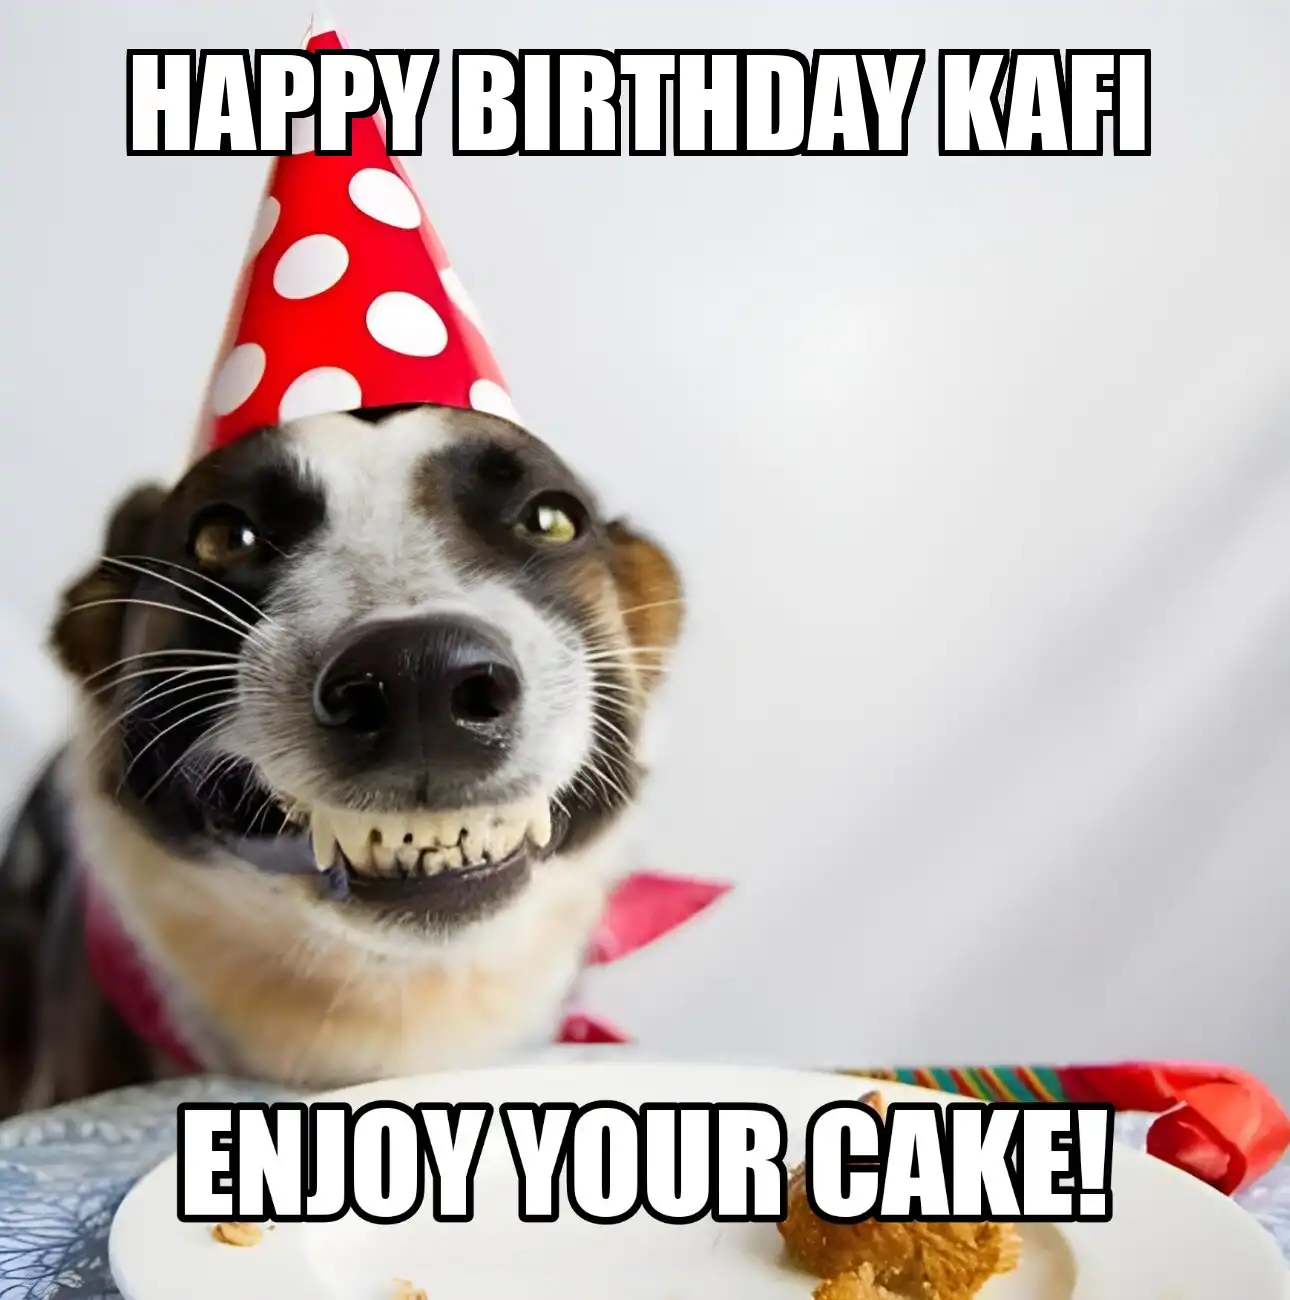 Happy Birthday Kafi Enjoy Your Cake Dog Meme